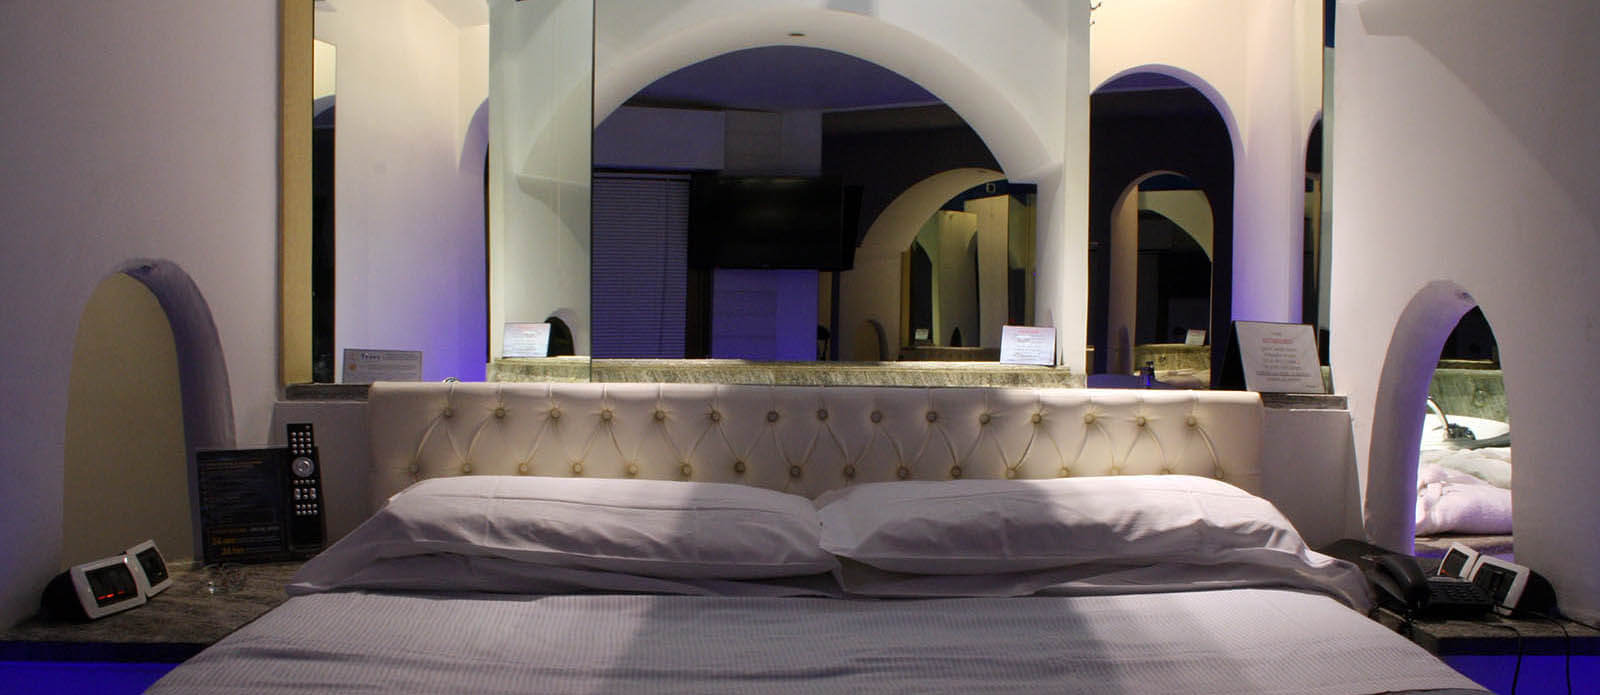 Motel K Junior Suite Santorini vista su letto matrimoniale con giochi di specchi particolari vasca dietro al letto camera a tema isole greche